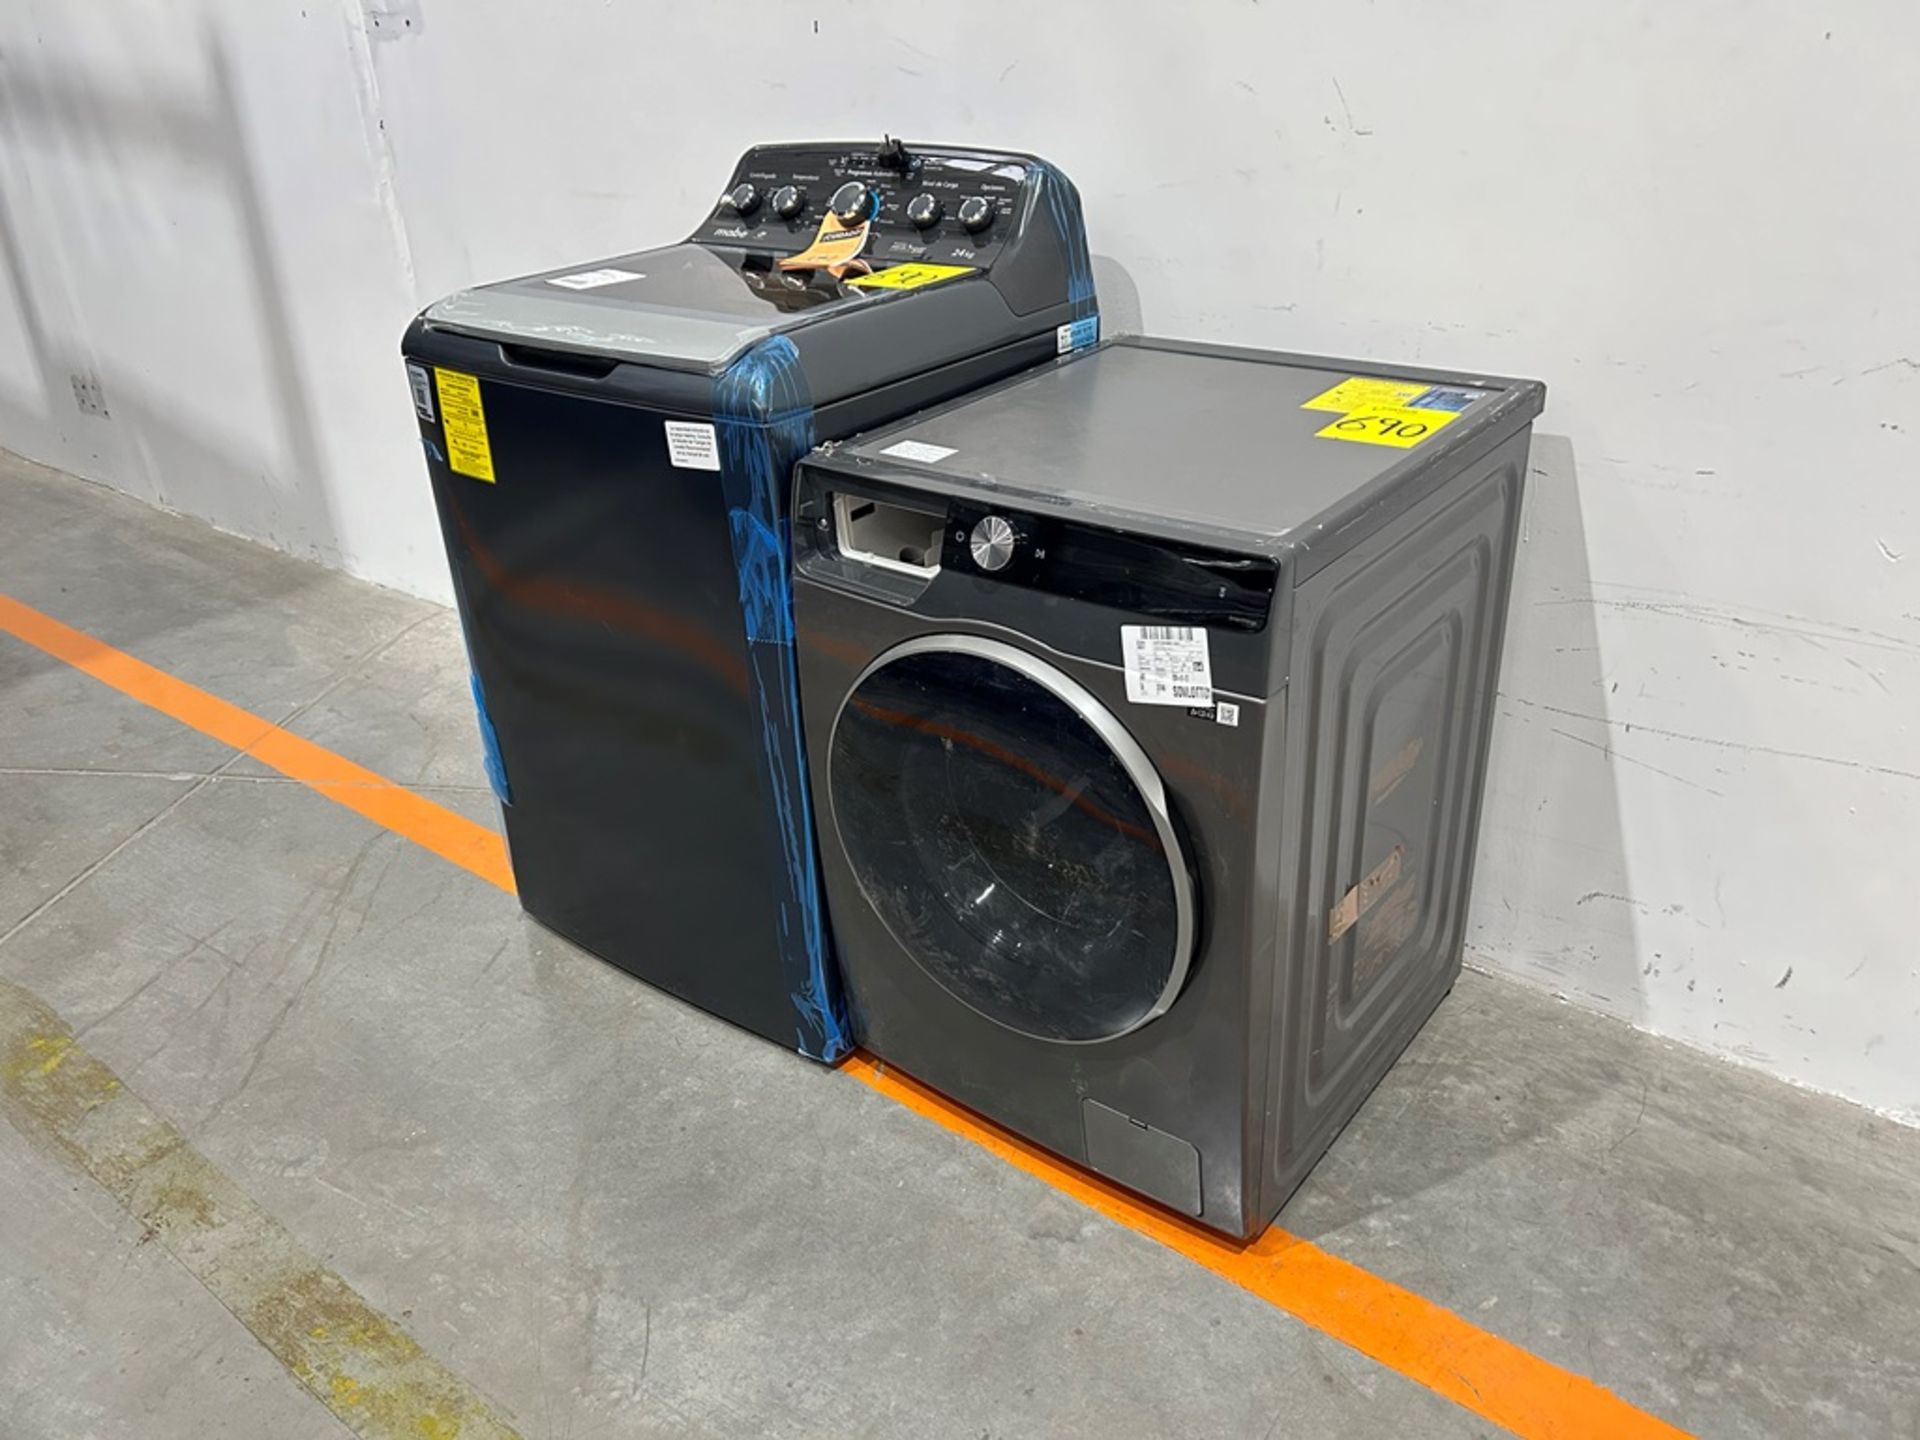 Lote de 2 lavadoras contiene: 1 Lavadora de 24 KG Marca MABE, Modelo LMA742115WDAB10, Serie S15124, - Image 2 of 10